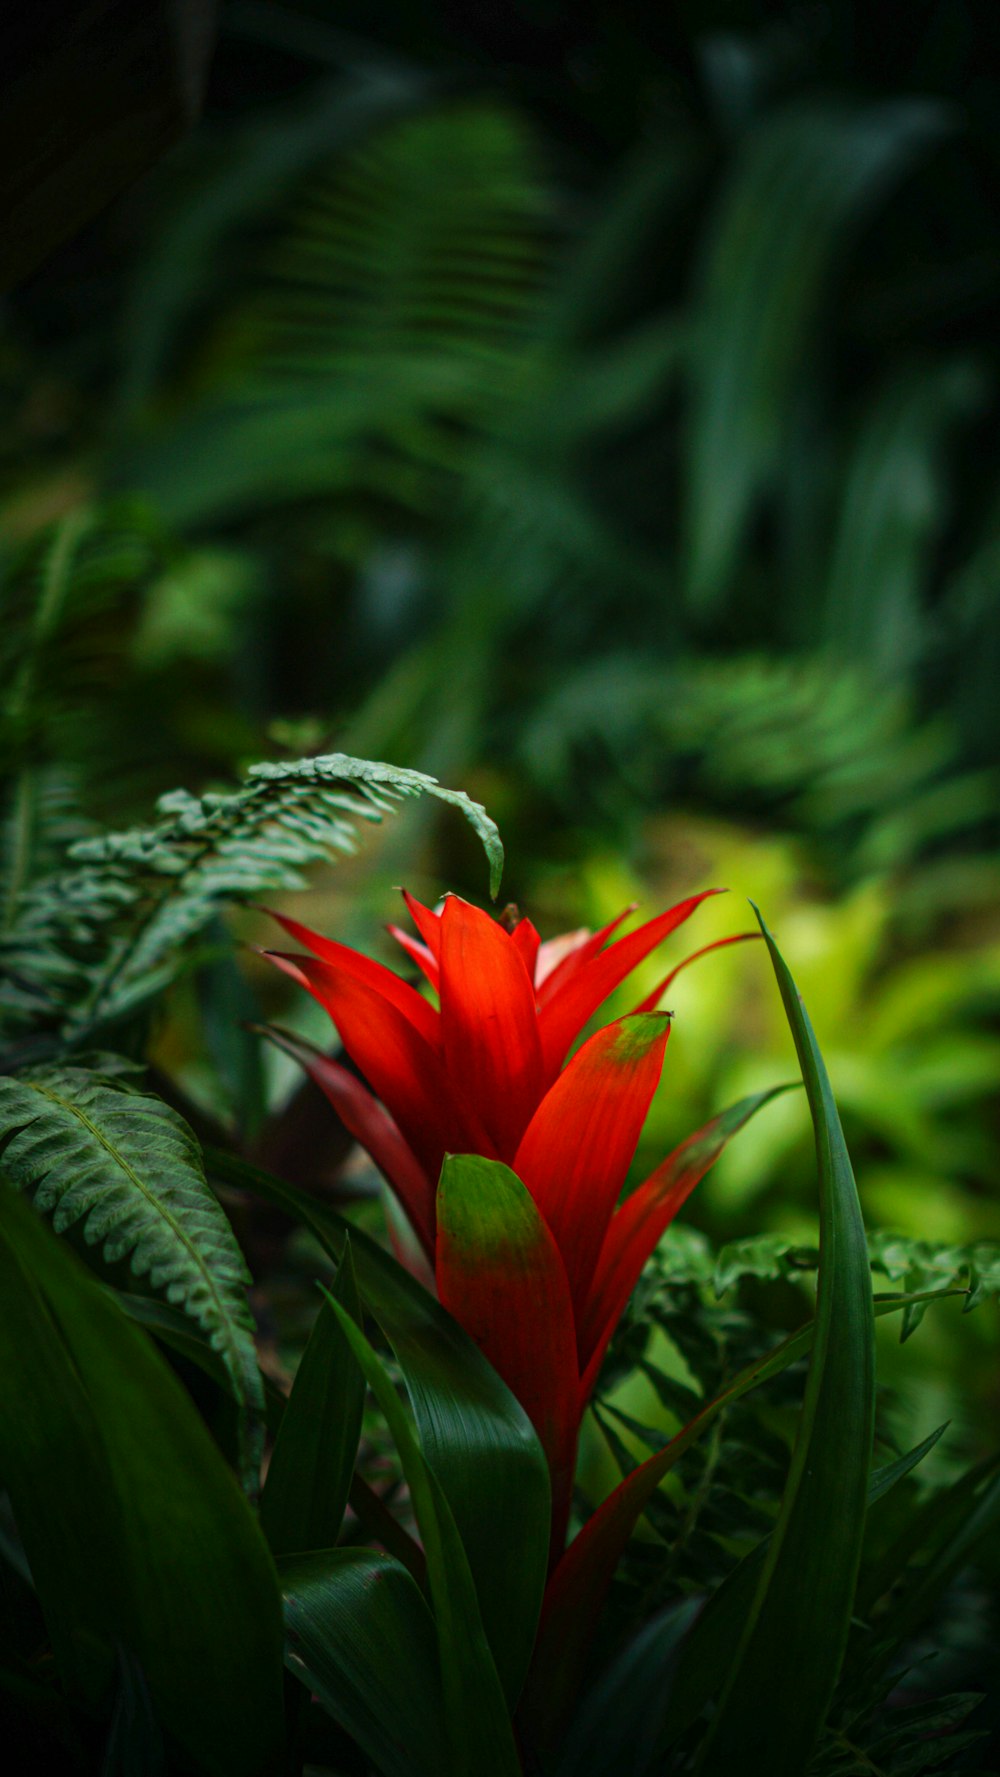 flor vermelha na lente de deslocamento de inclinação